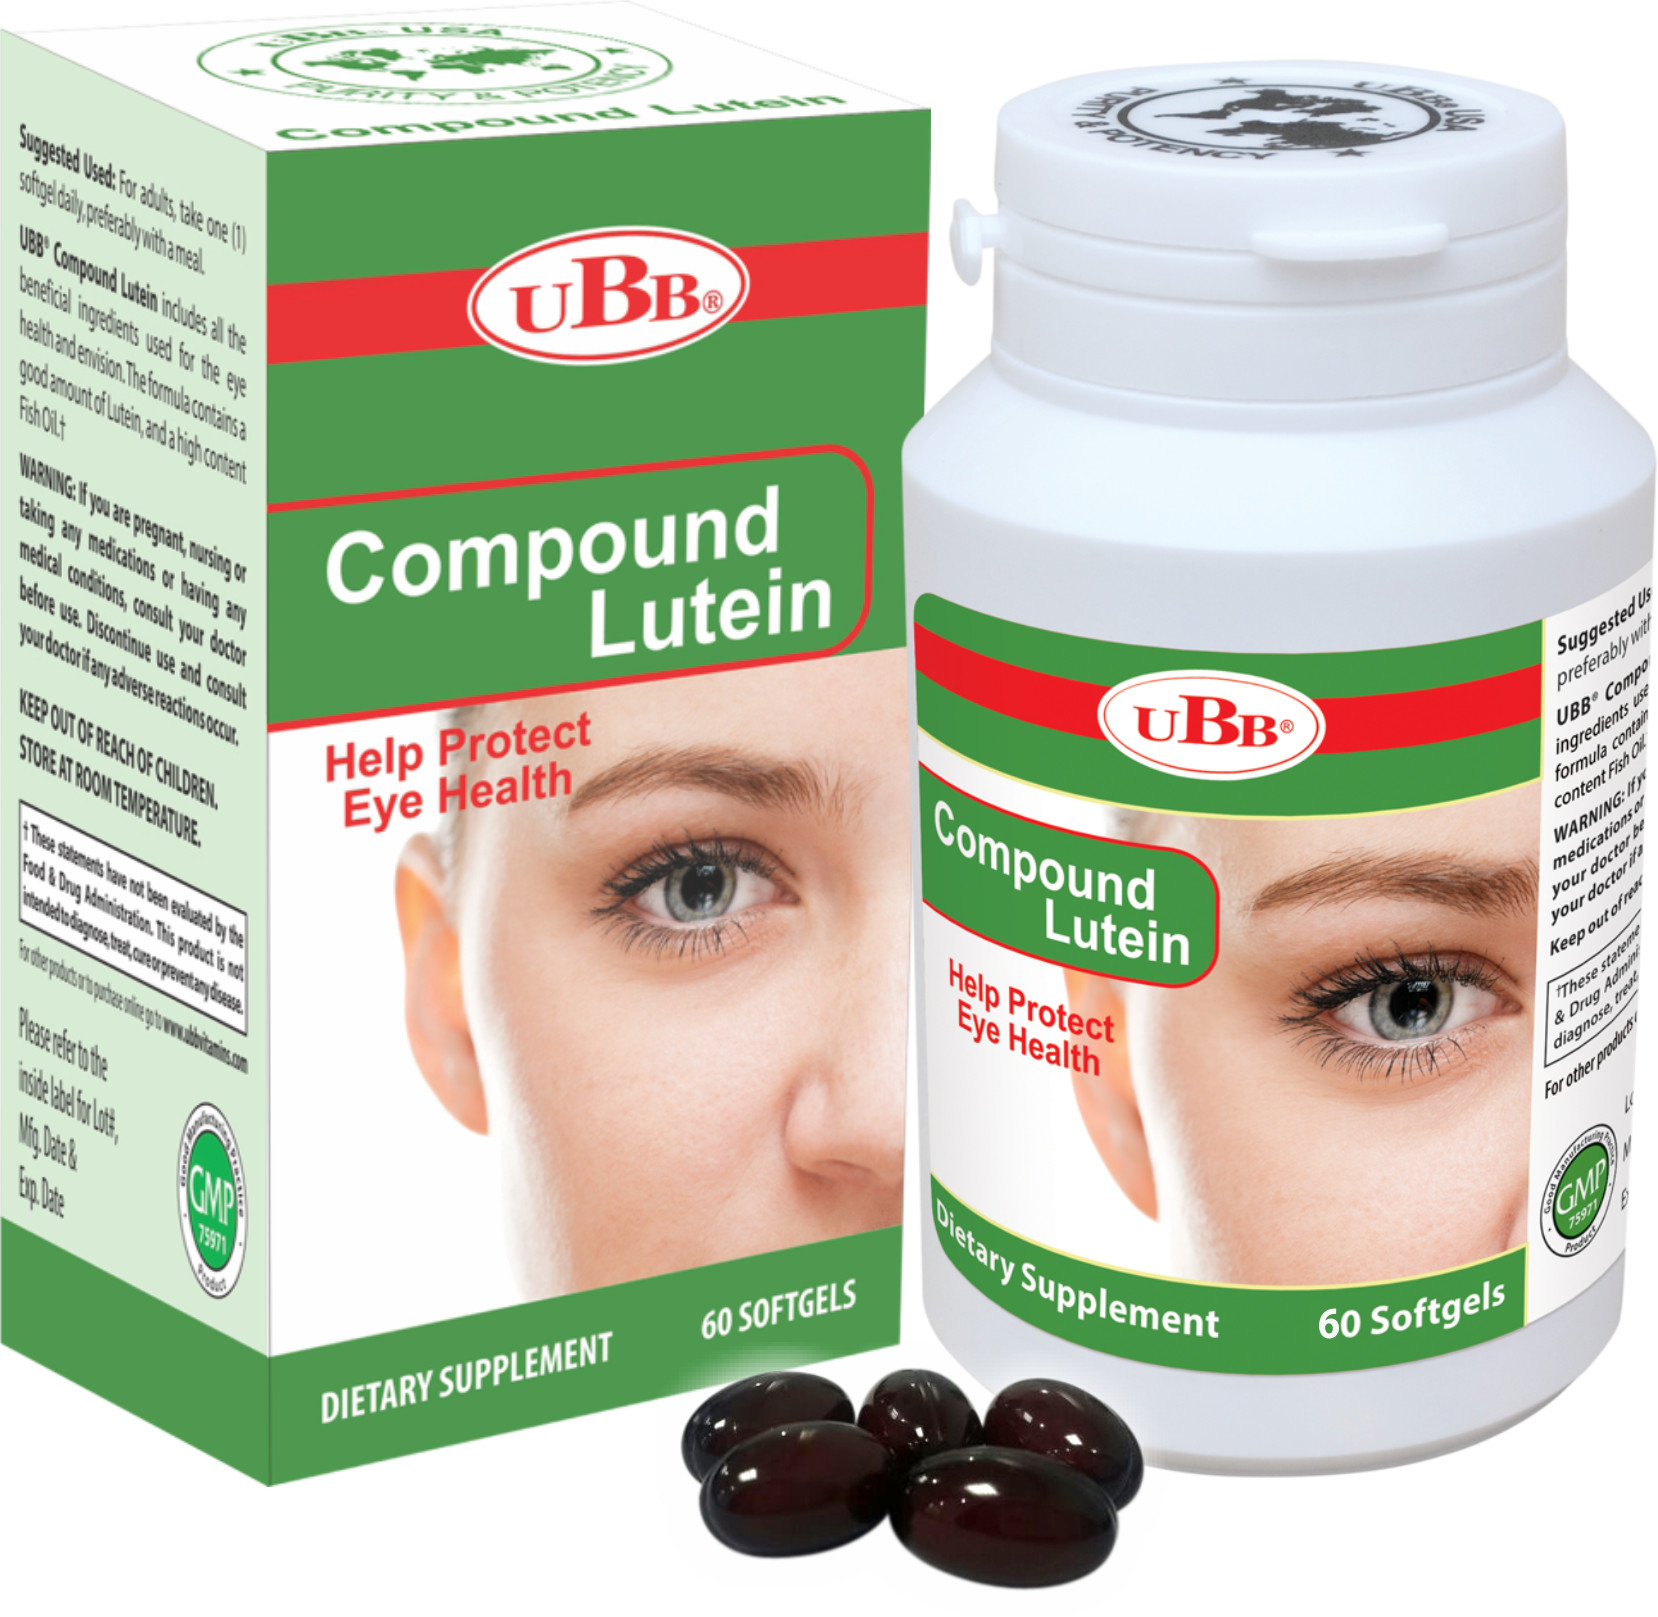 Thực Phẩm Chức Năng - UBB Compound Lutein - Hỗ trợ chống ánh sáng xanh, giúp đôi mắt khỏe mạnh